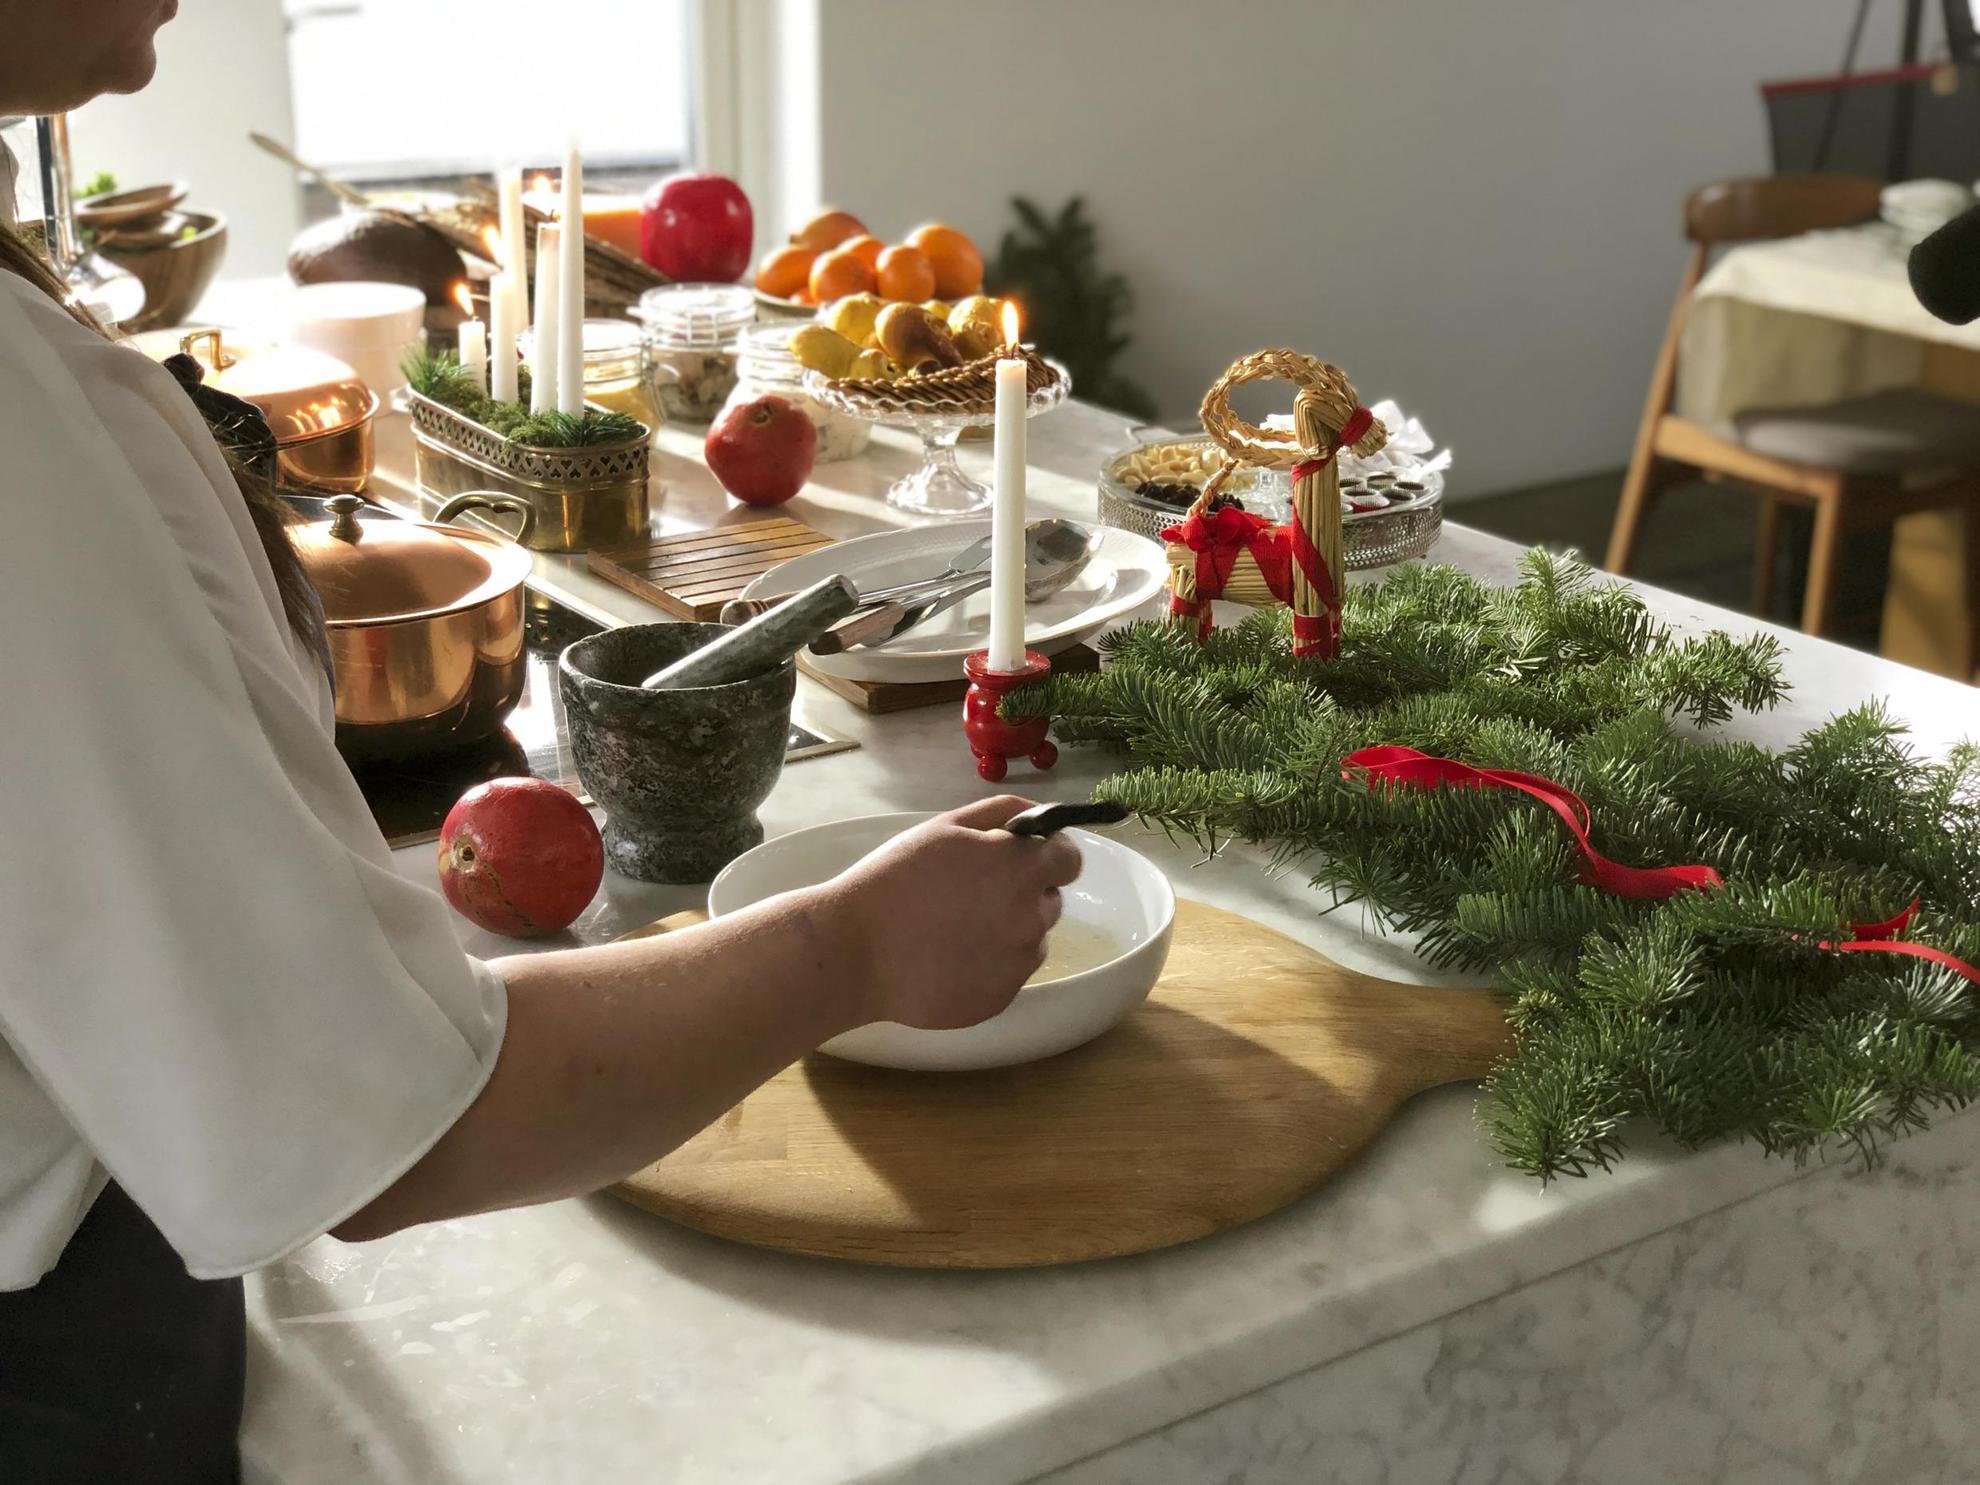 Een vrouw die een kerstlunch klaarmaakt. Op de tafel voor haar staan diverse schalen, koperen potten, adventskandelaar, brandende kaarsen, dennentakjes en een klein kerstgeitje.